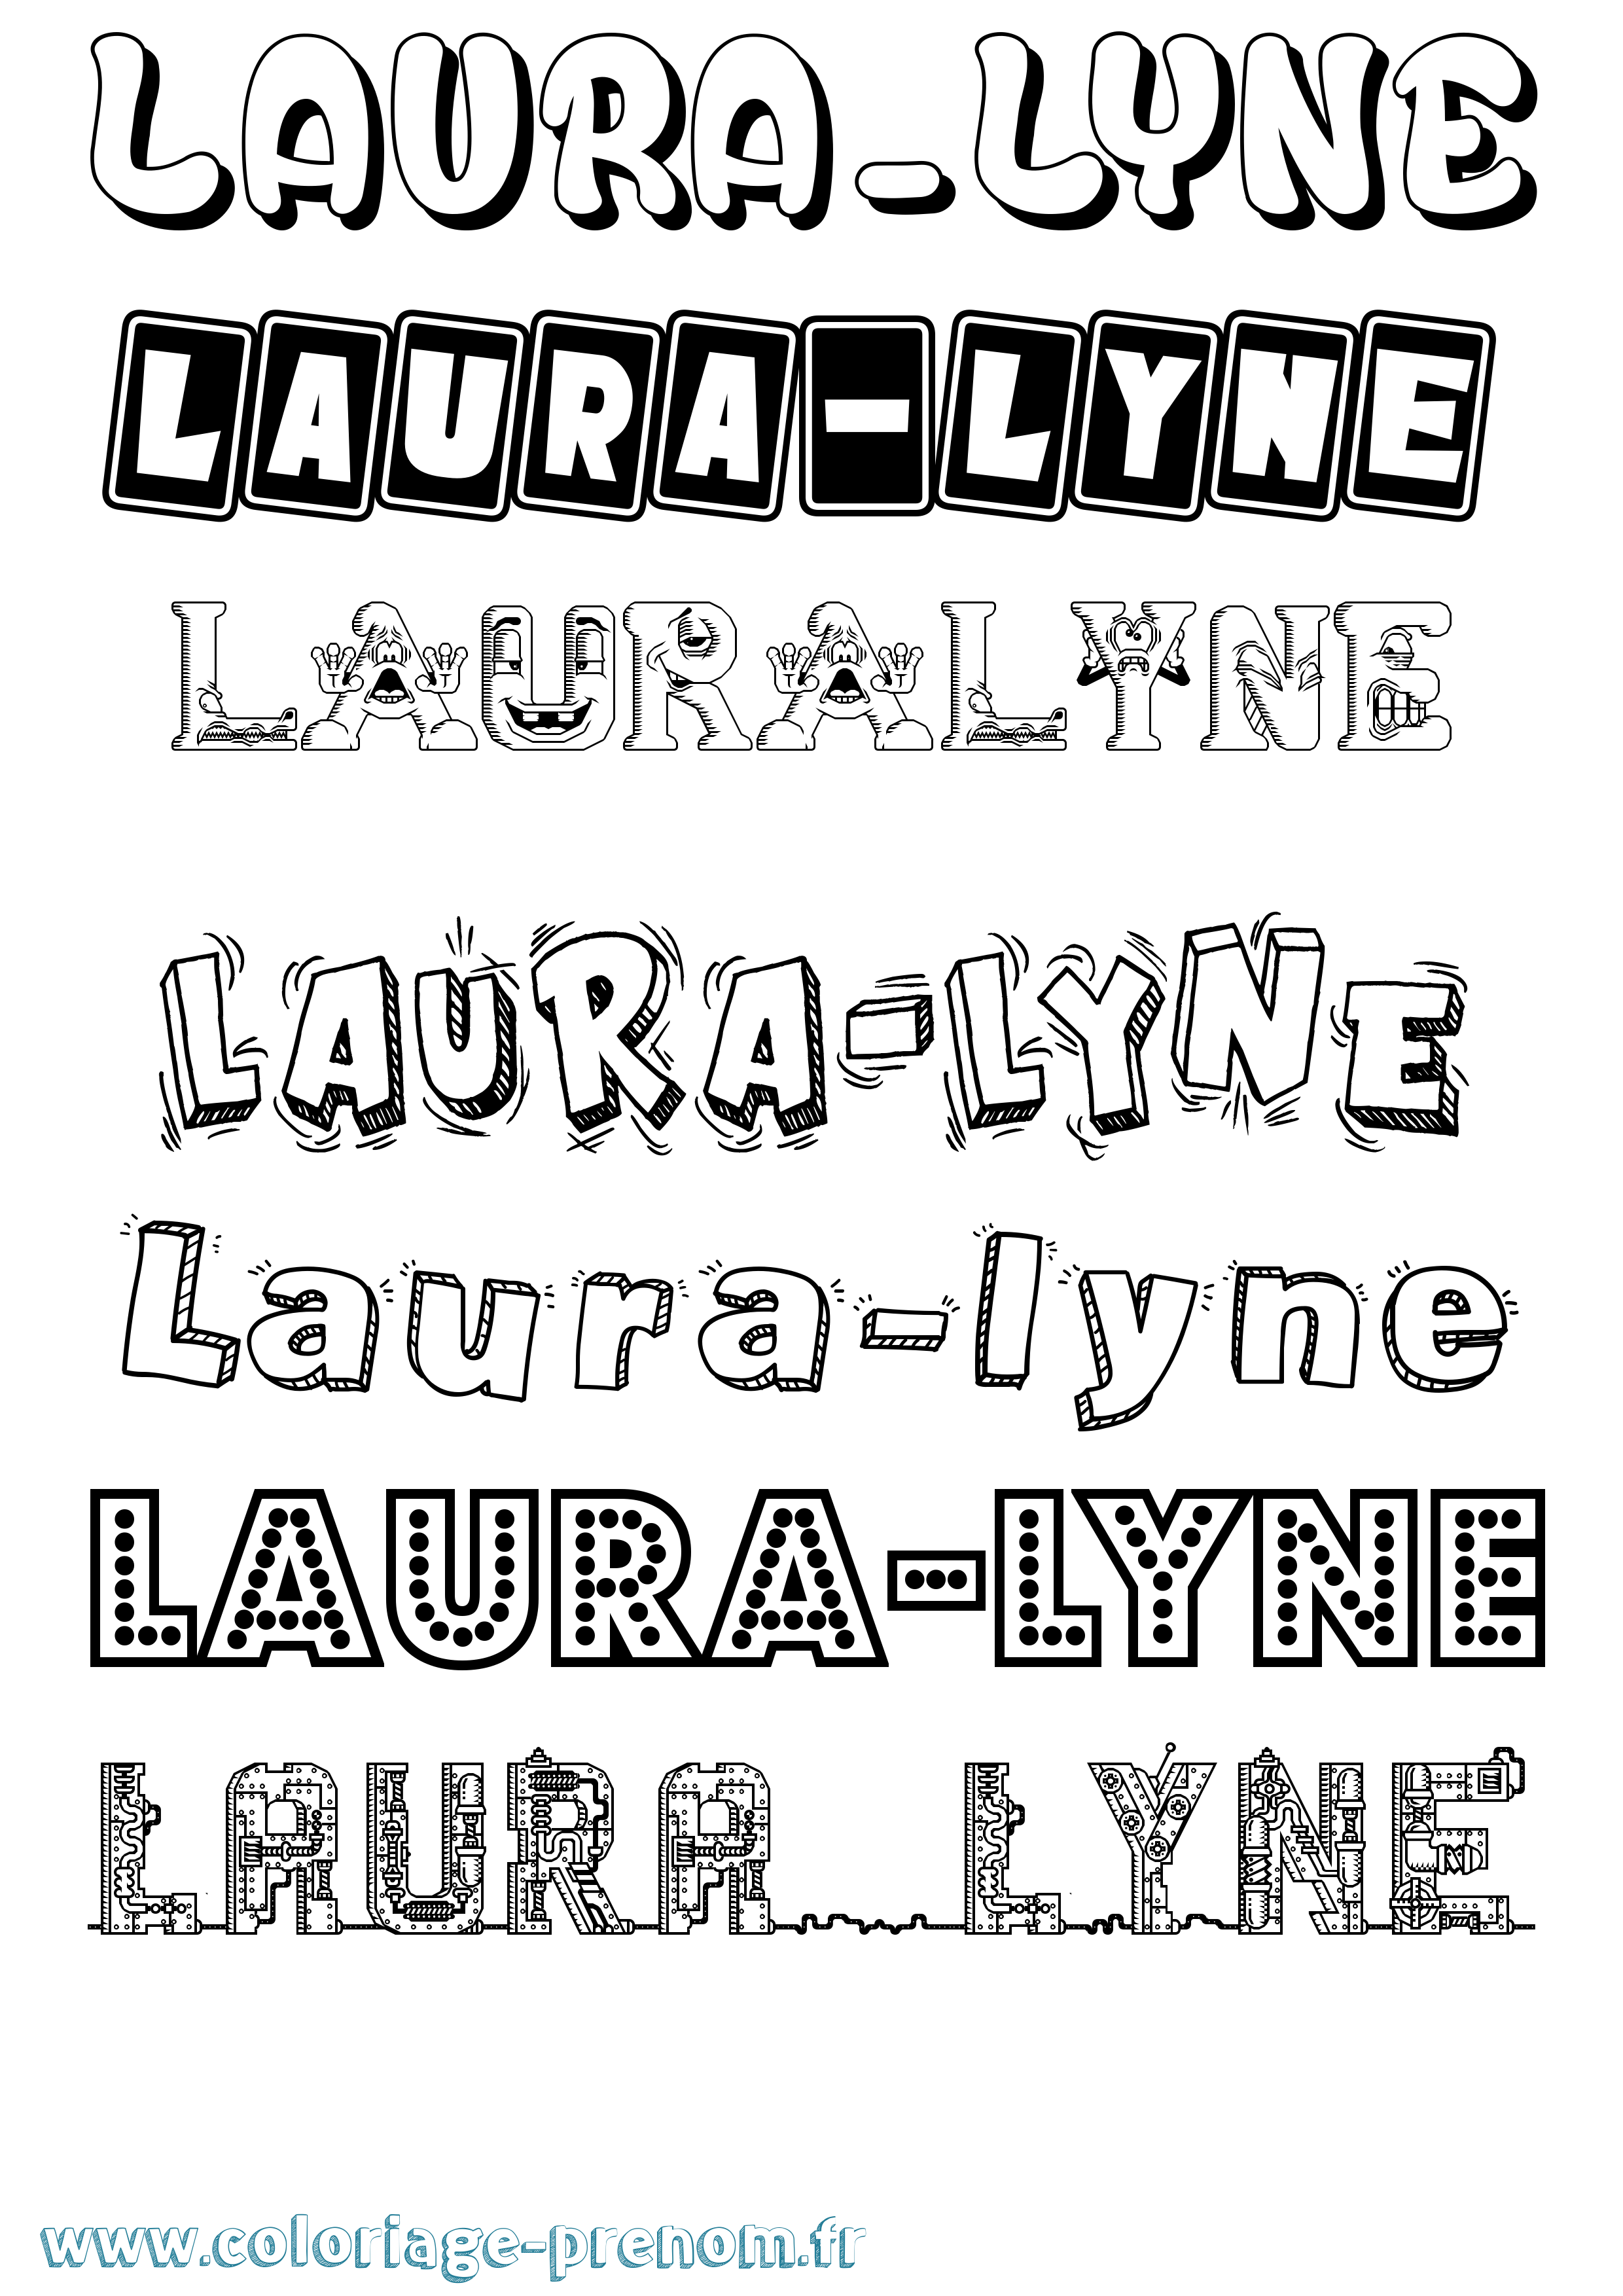 Coloriage prénom Laura-Lyne Fun